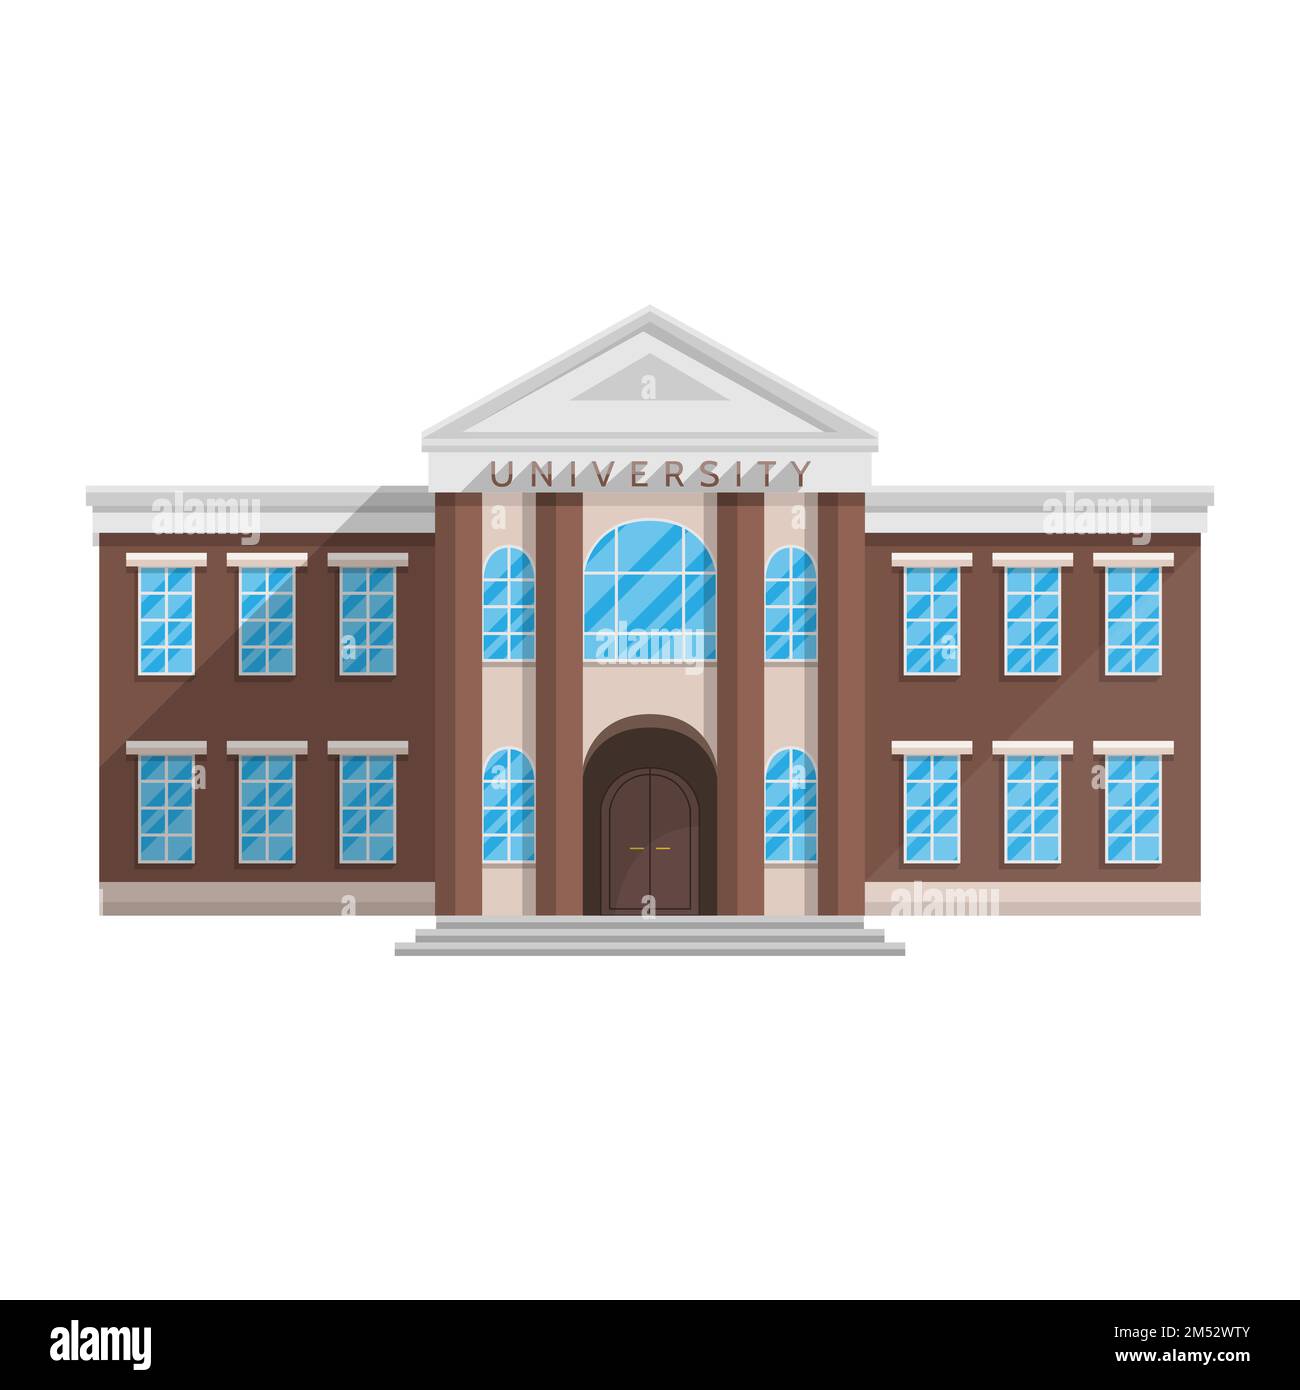 Edificio universitario in stile piatto isolato su sfondo bianco Vector Illustration. Formazione di scienza e ricerca dell'istruzione superiore, un luogo dove s Illustrazione Vettoriale